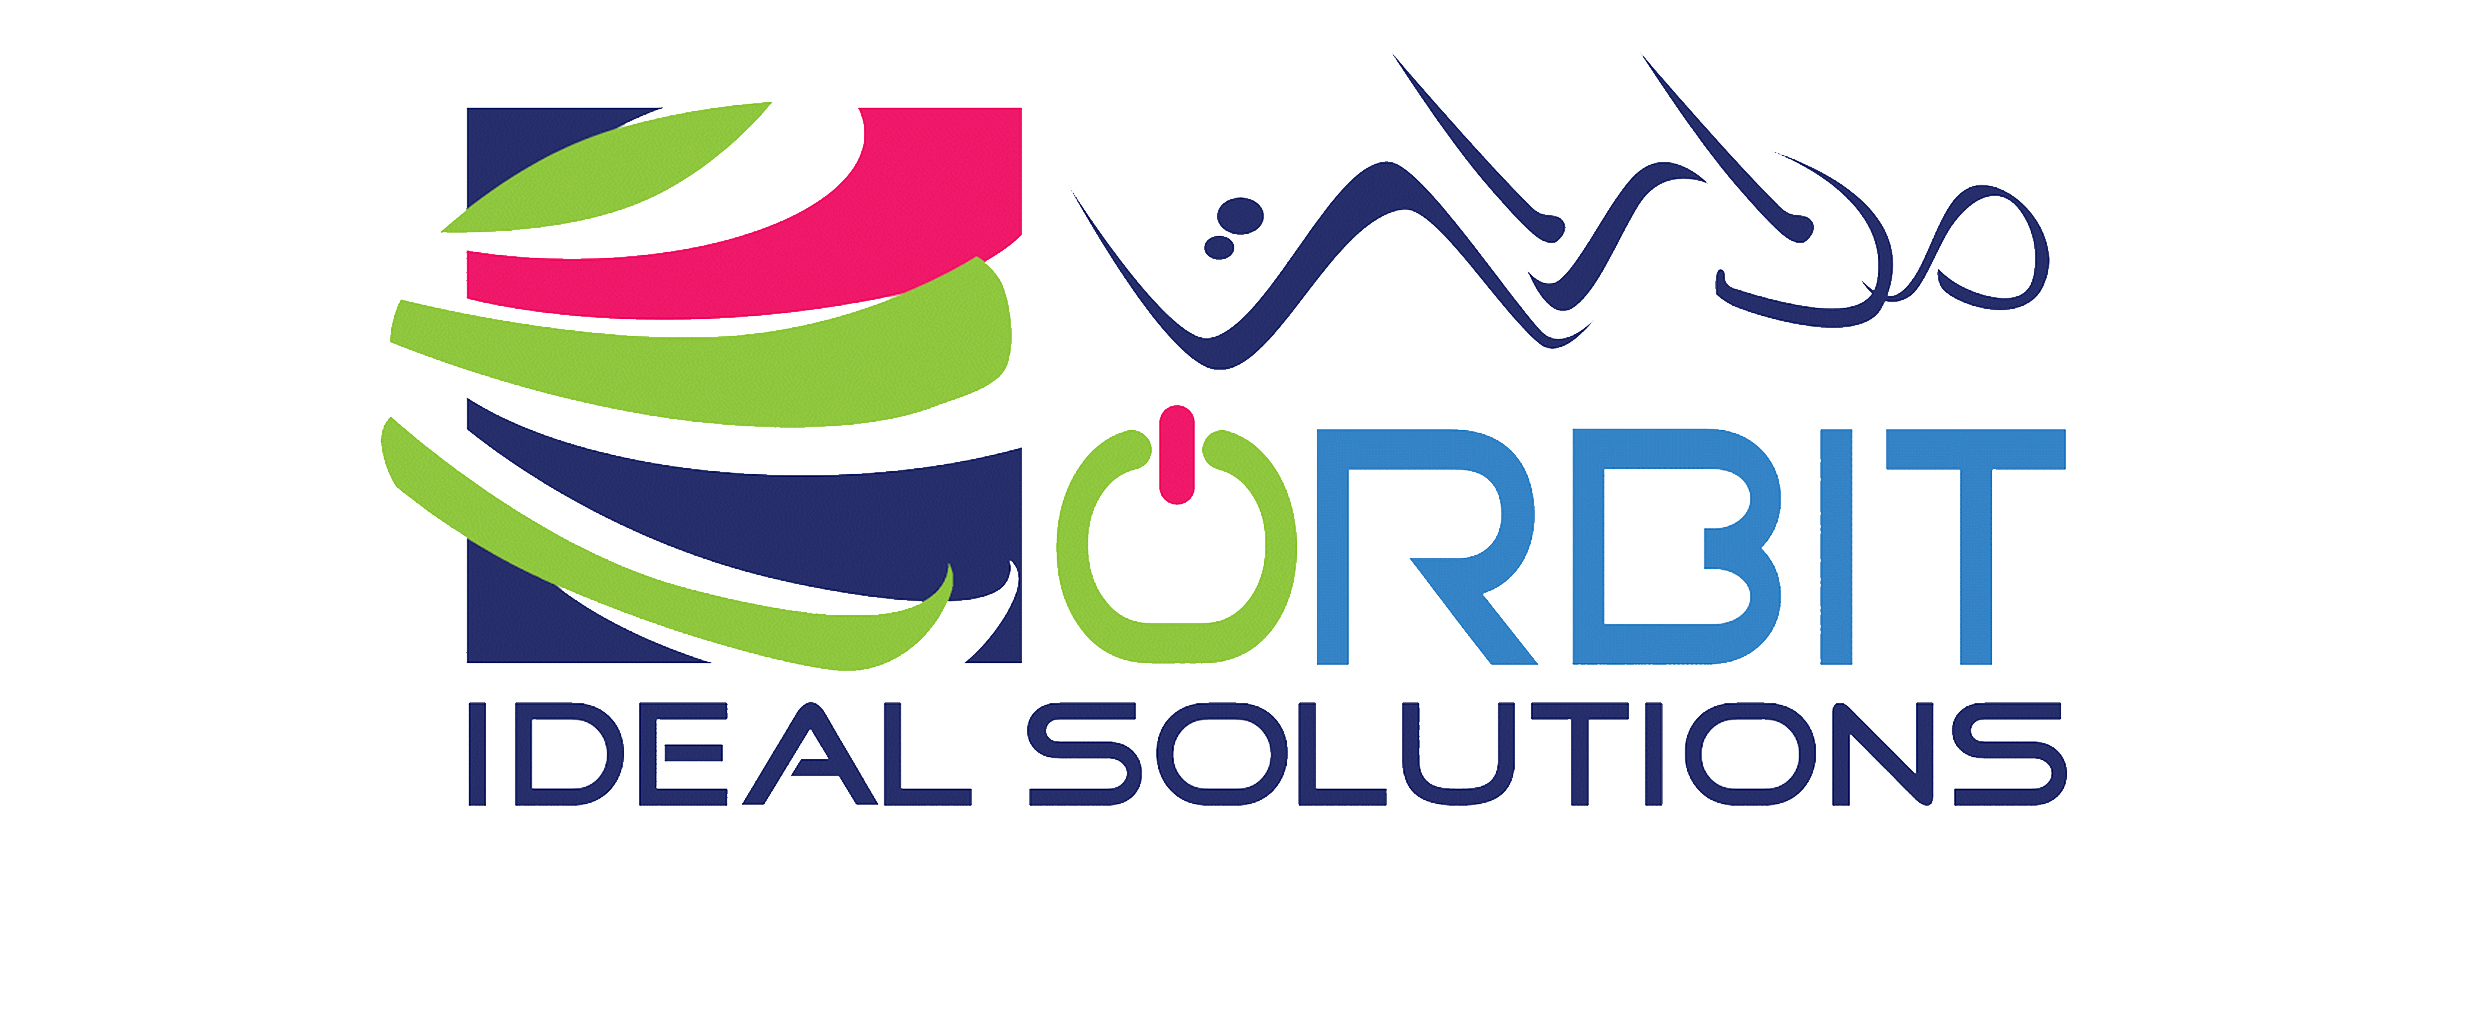 Madarat Ideal Solutions logo